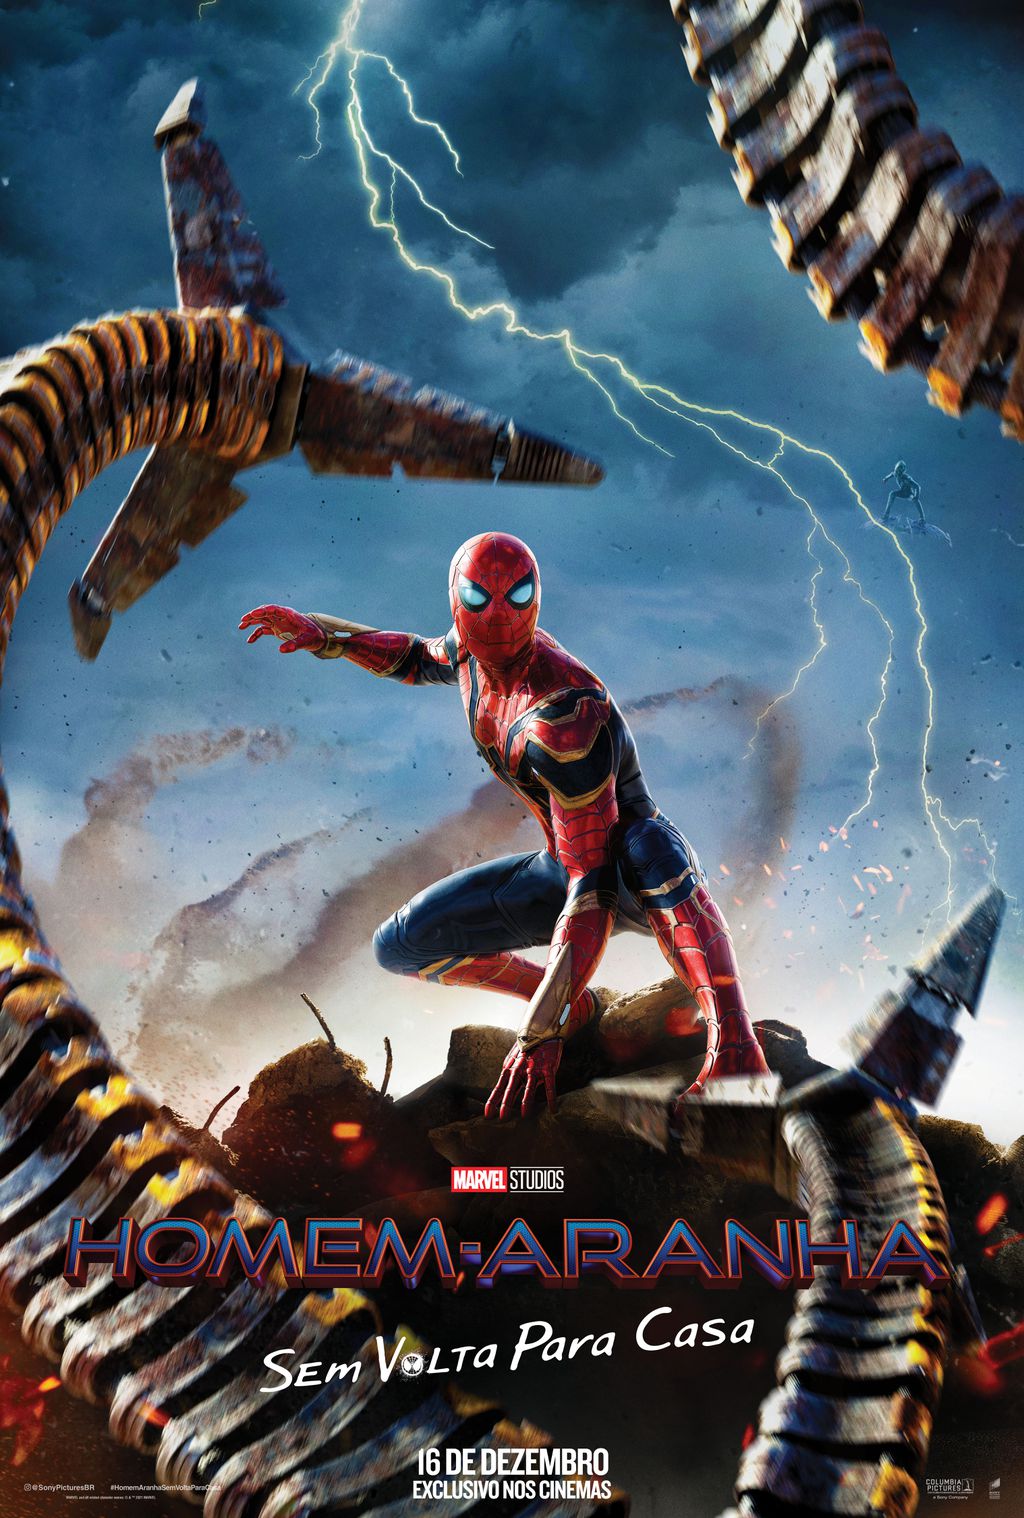 Homem-Aranha 3 – Papo de Cinema